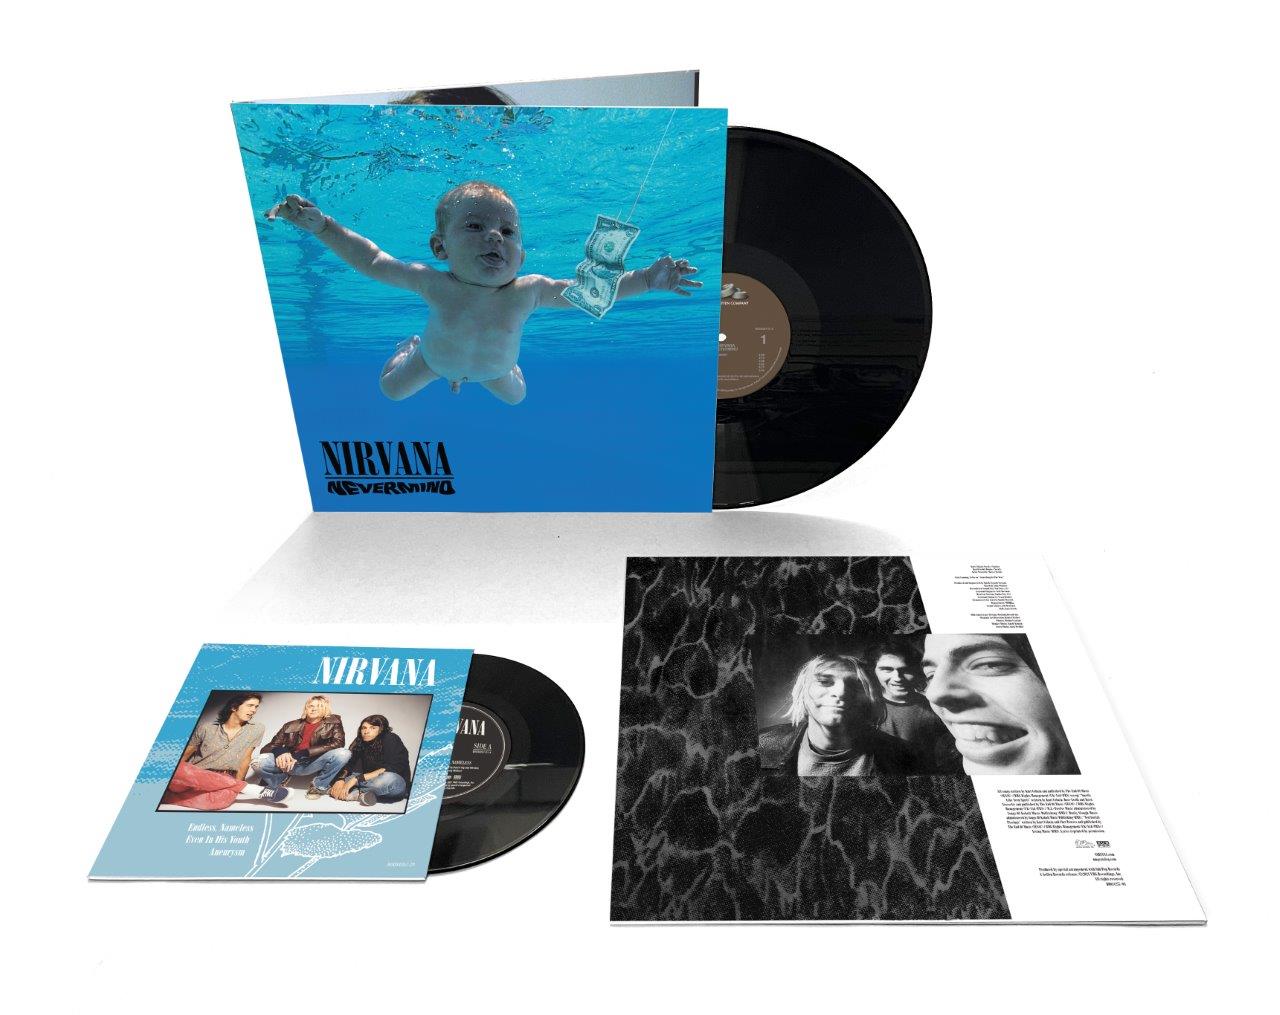 Nirvana / Nevermind 30 vinyl LP + 7" single